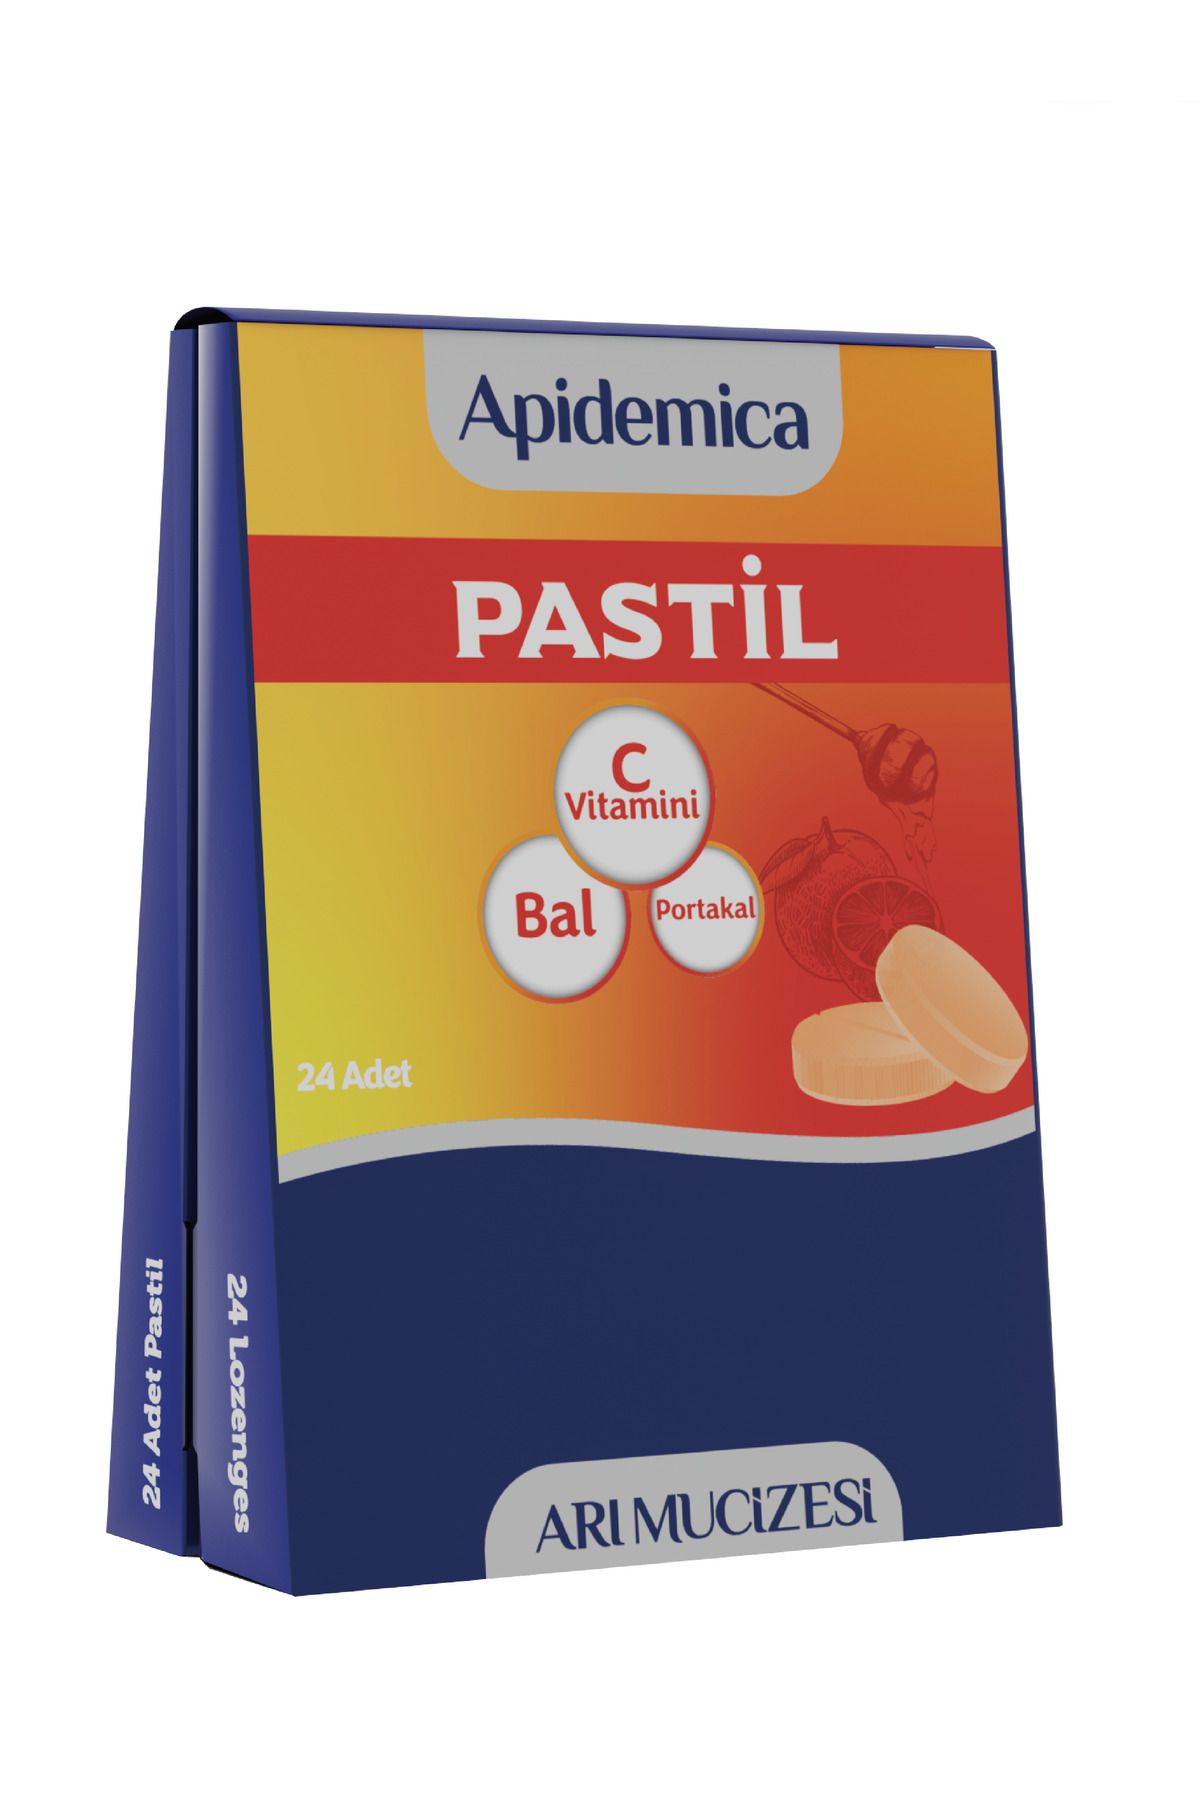 Arı Mucizesi Apidemica Pastil (portakal, Bal Ve C Vitamini)